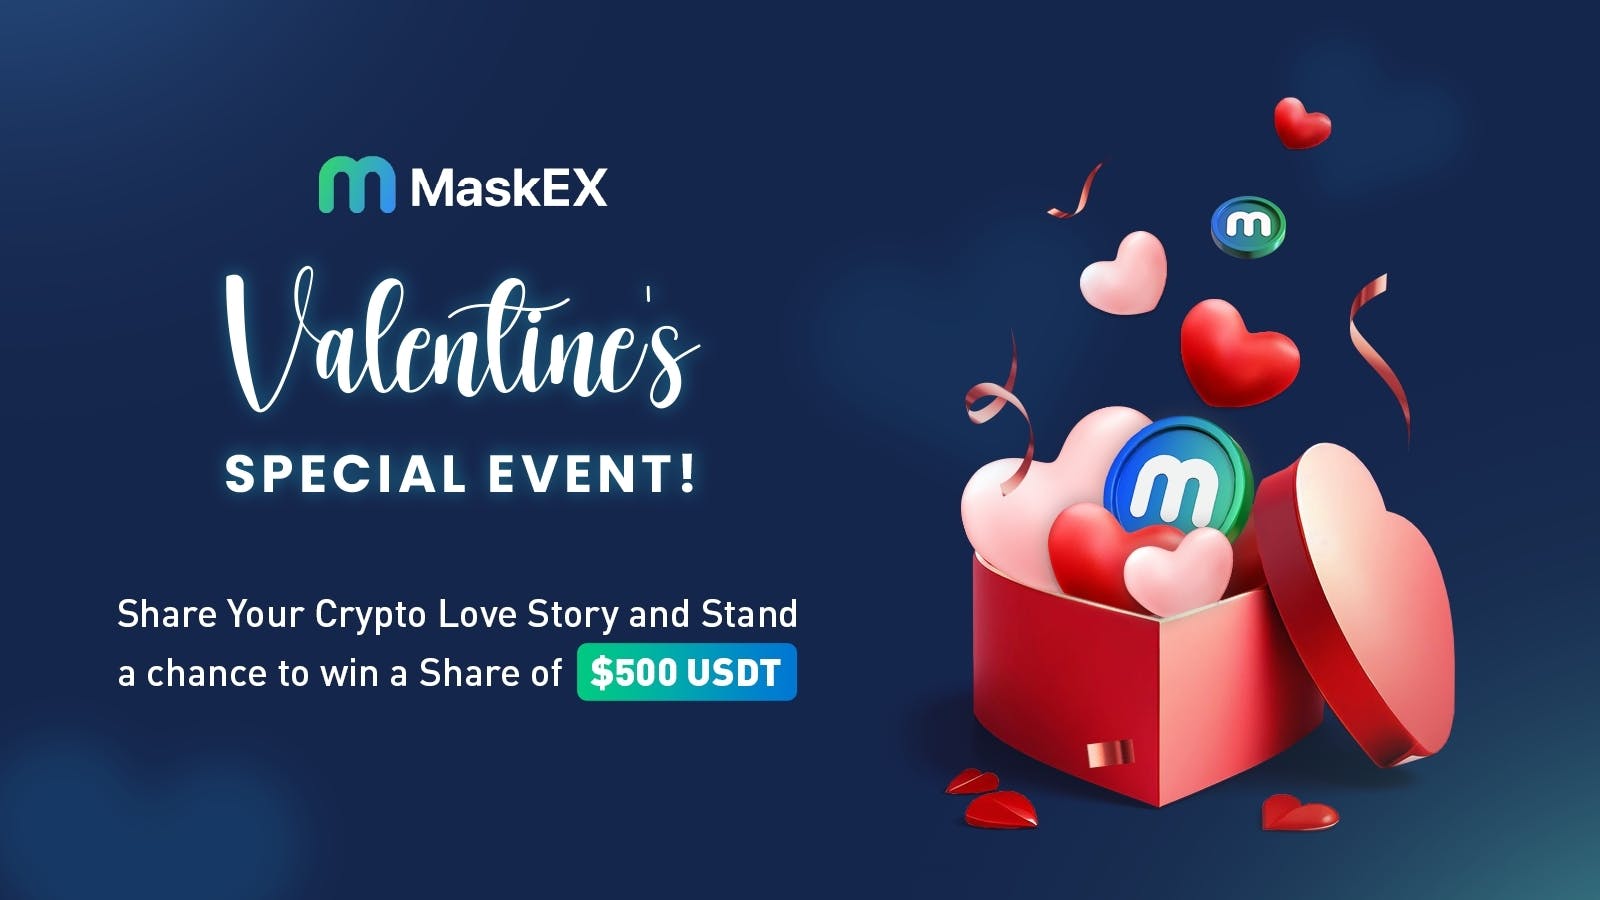 MasKEX Valentine’s Day Event!